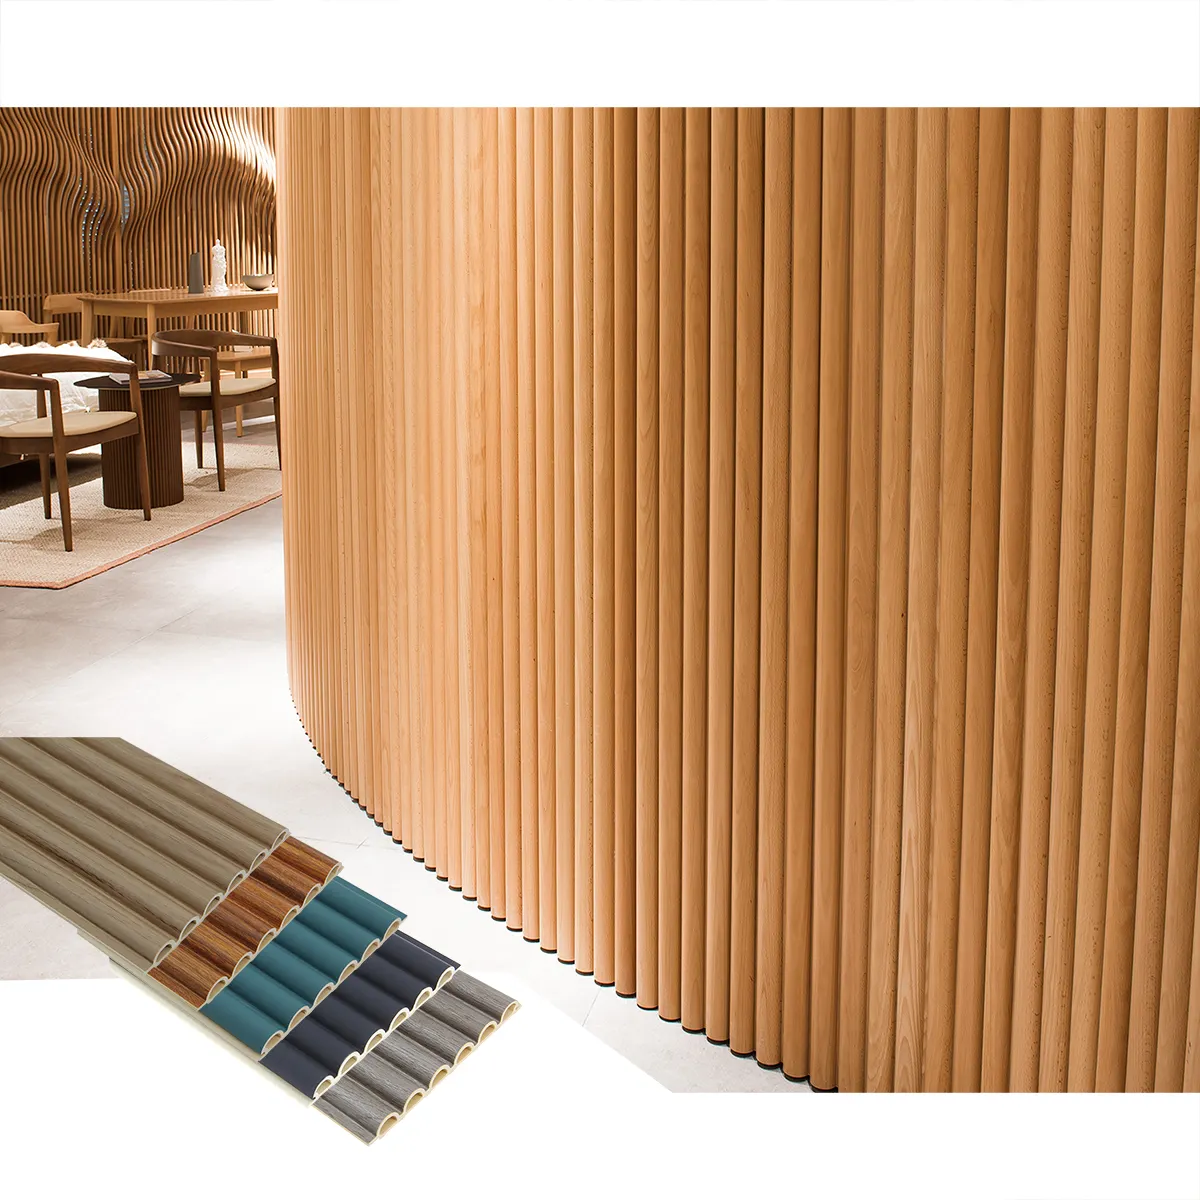 Foju 벽 패널 매트 나무 곡물 PVC WPC 3D 피리 벽 패널 인테리어 장식 대나무 벽 패널 및 보드